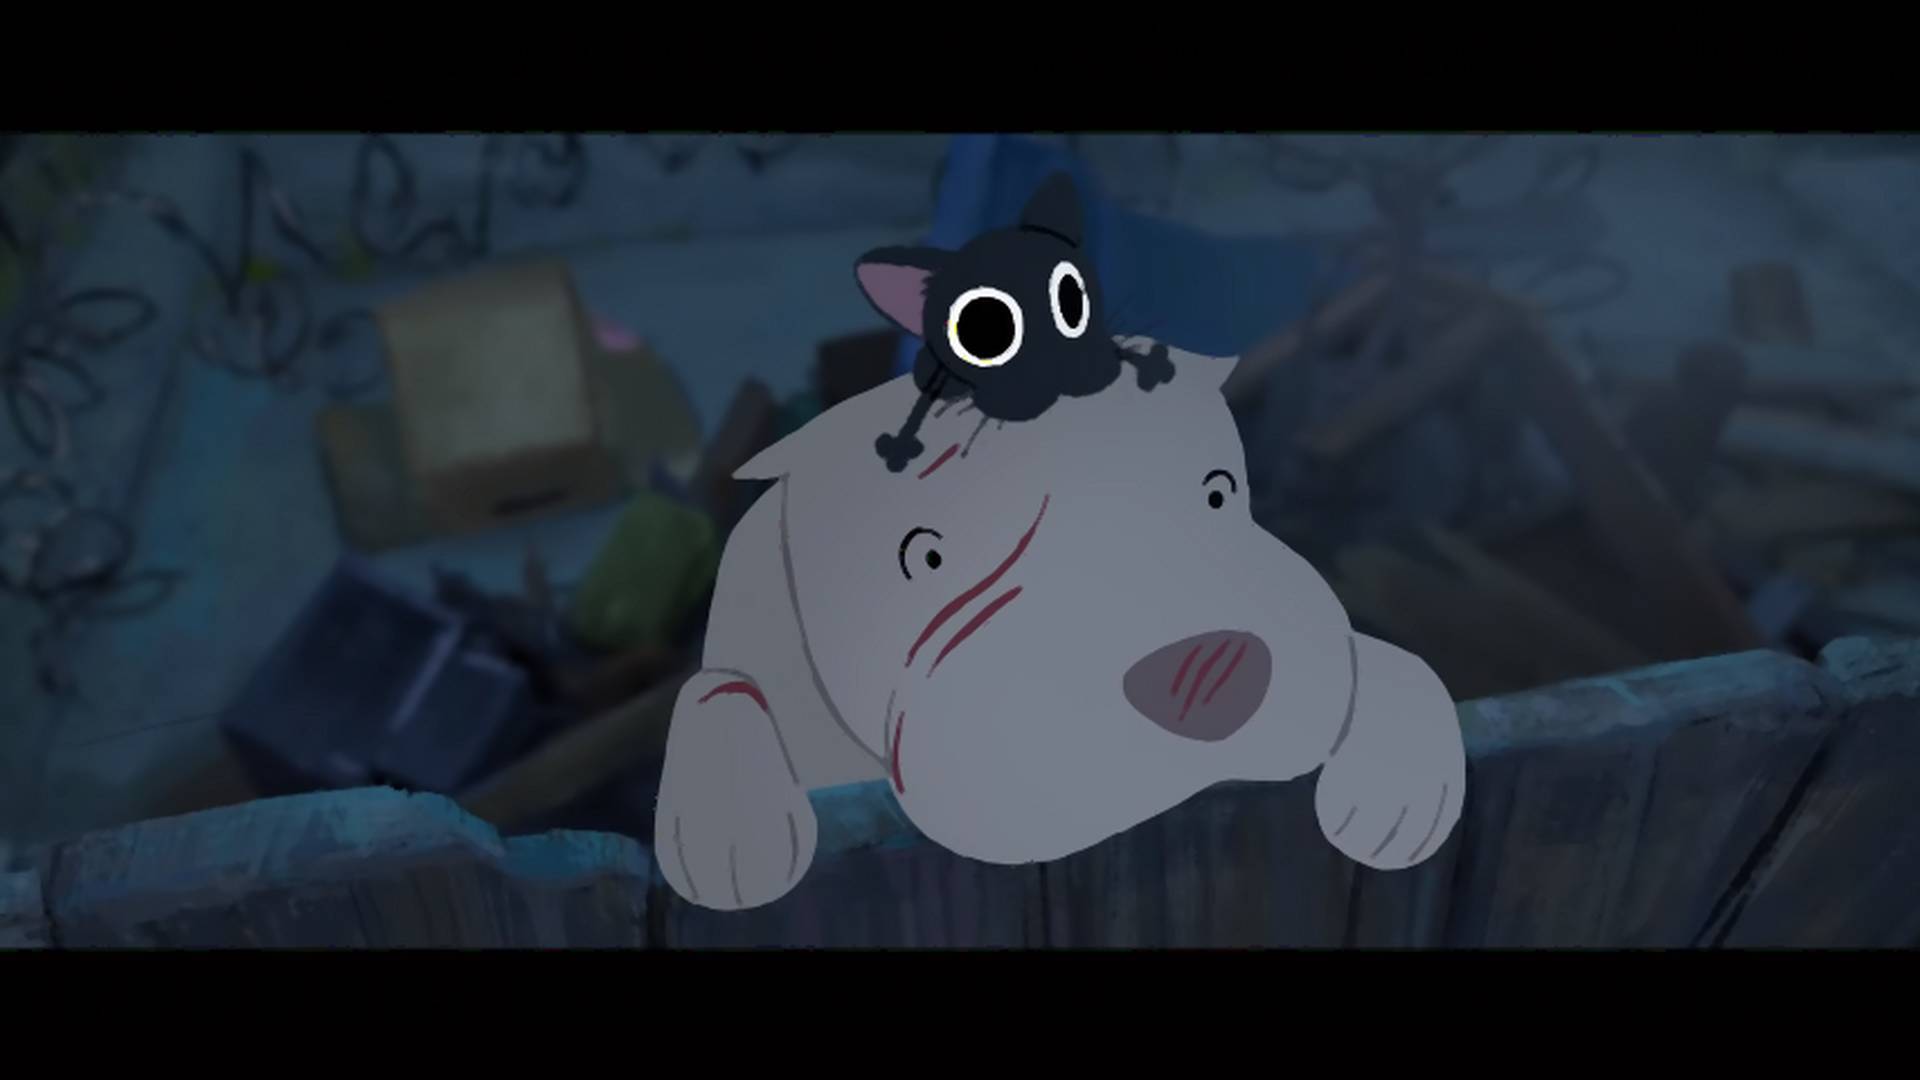 Pixarov kratki crtać o maci i pit bulu je suština prijateljstva i života